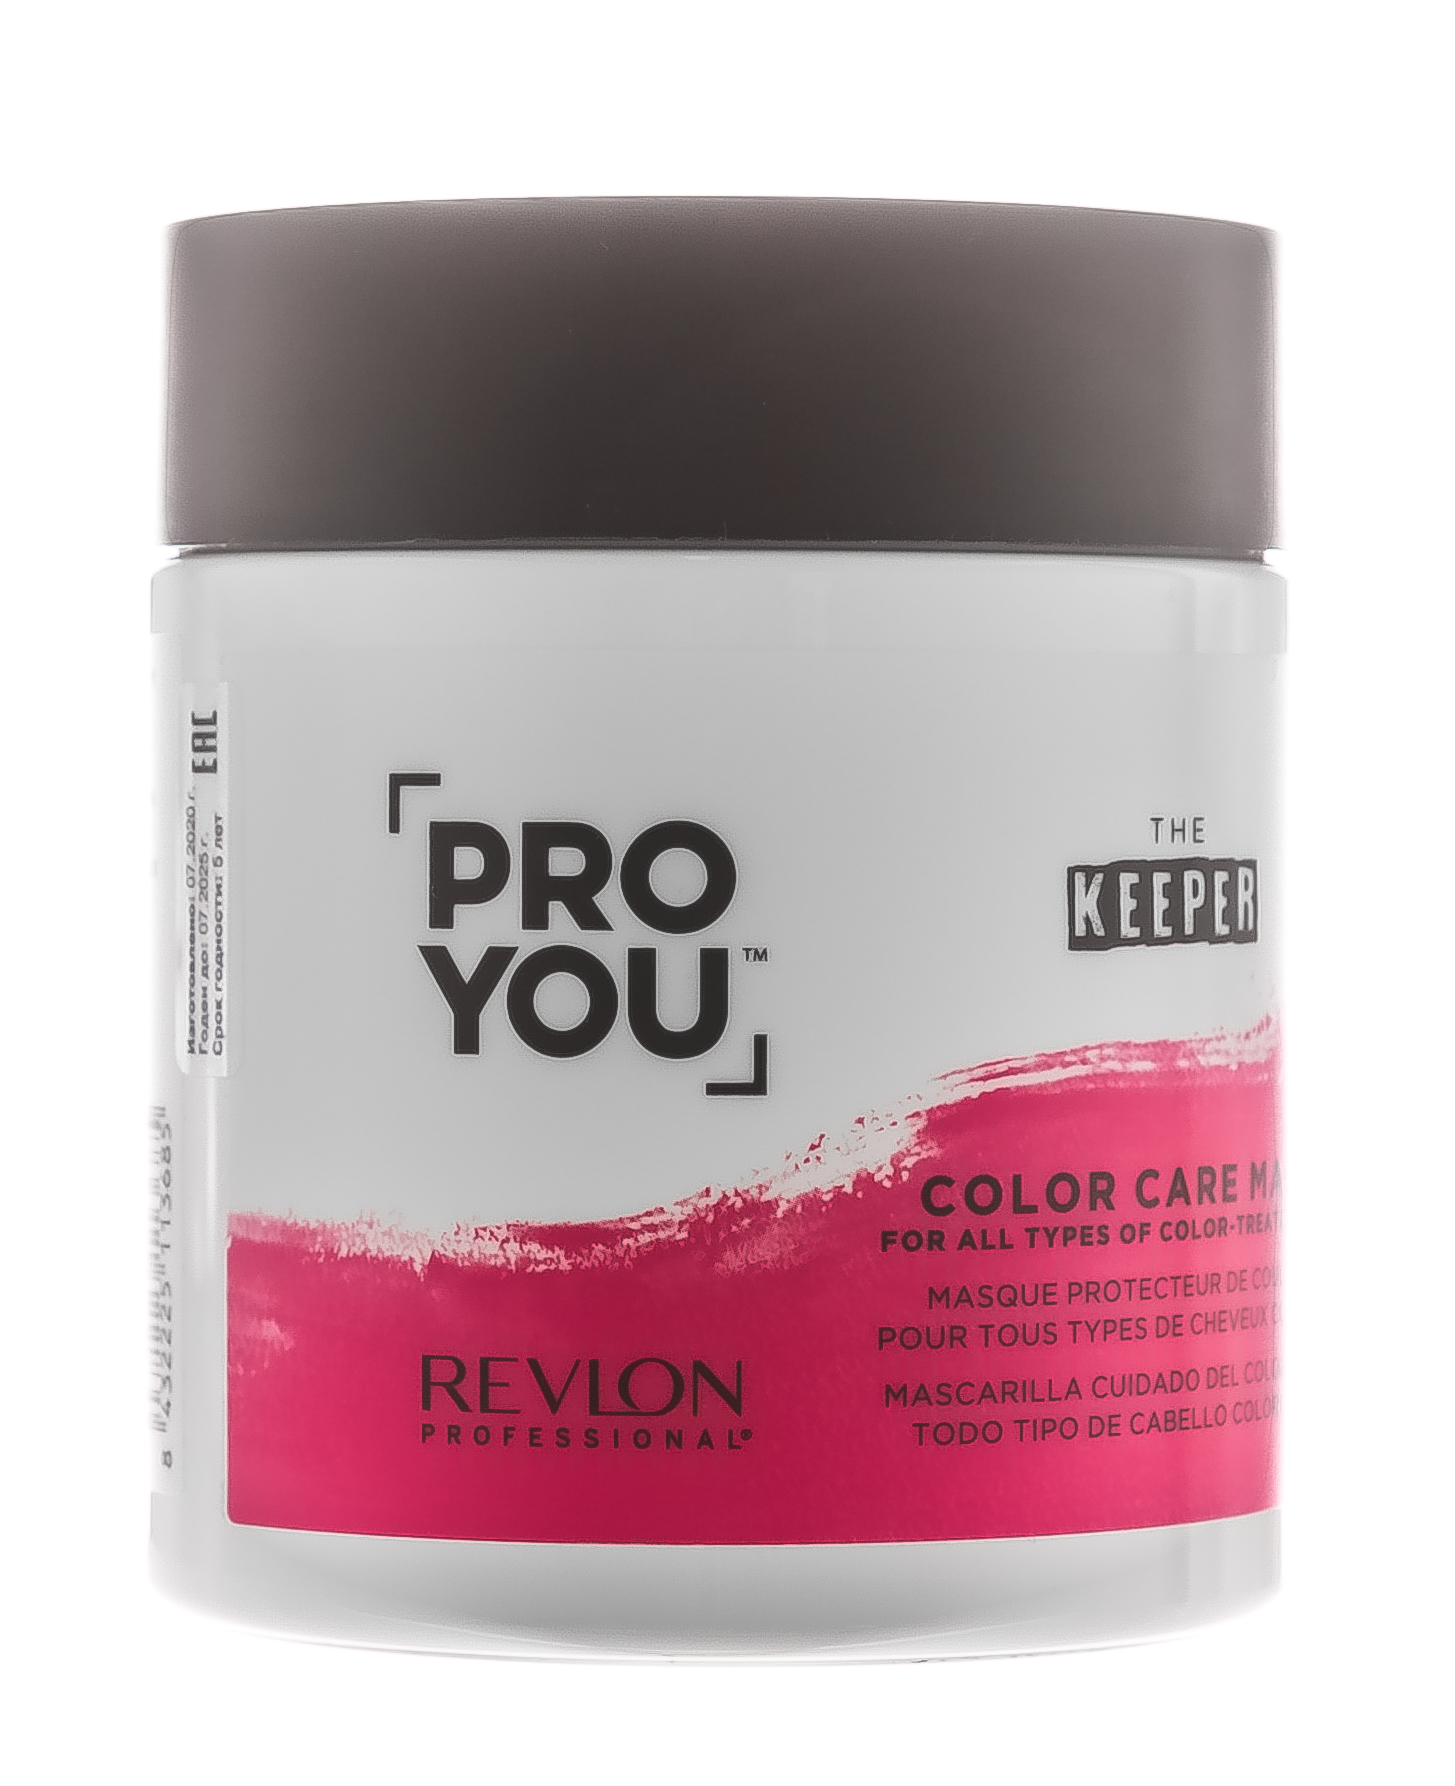 Купить Revlon Professional Маска защита цвета для всех типов окрашенных волос Color Care Mask, 500 мл (Revlon Professional, Pro You), США